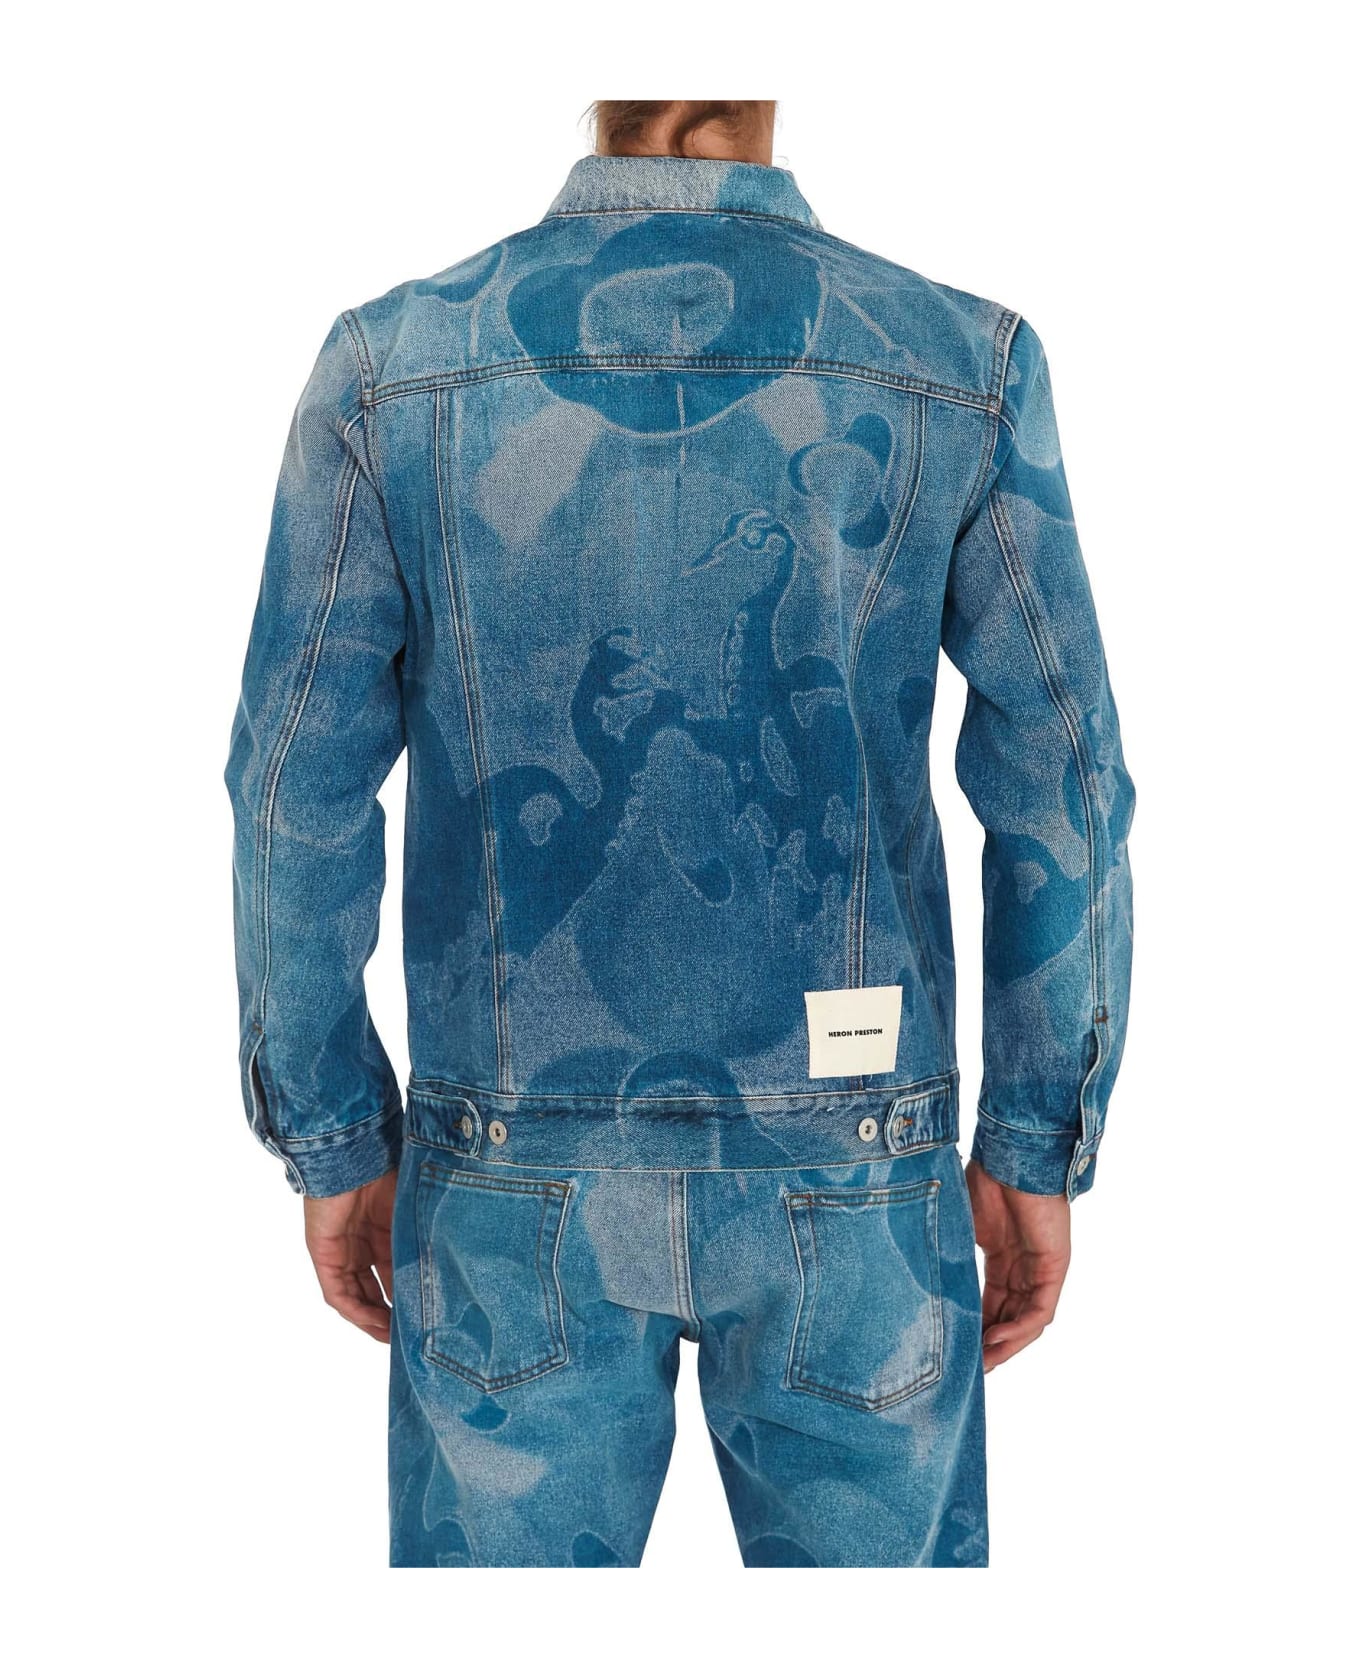 HERON PRESTON Camouflage Print Denim Jacket - DENIM BLUE